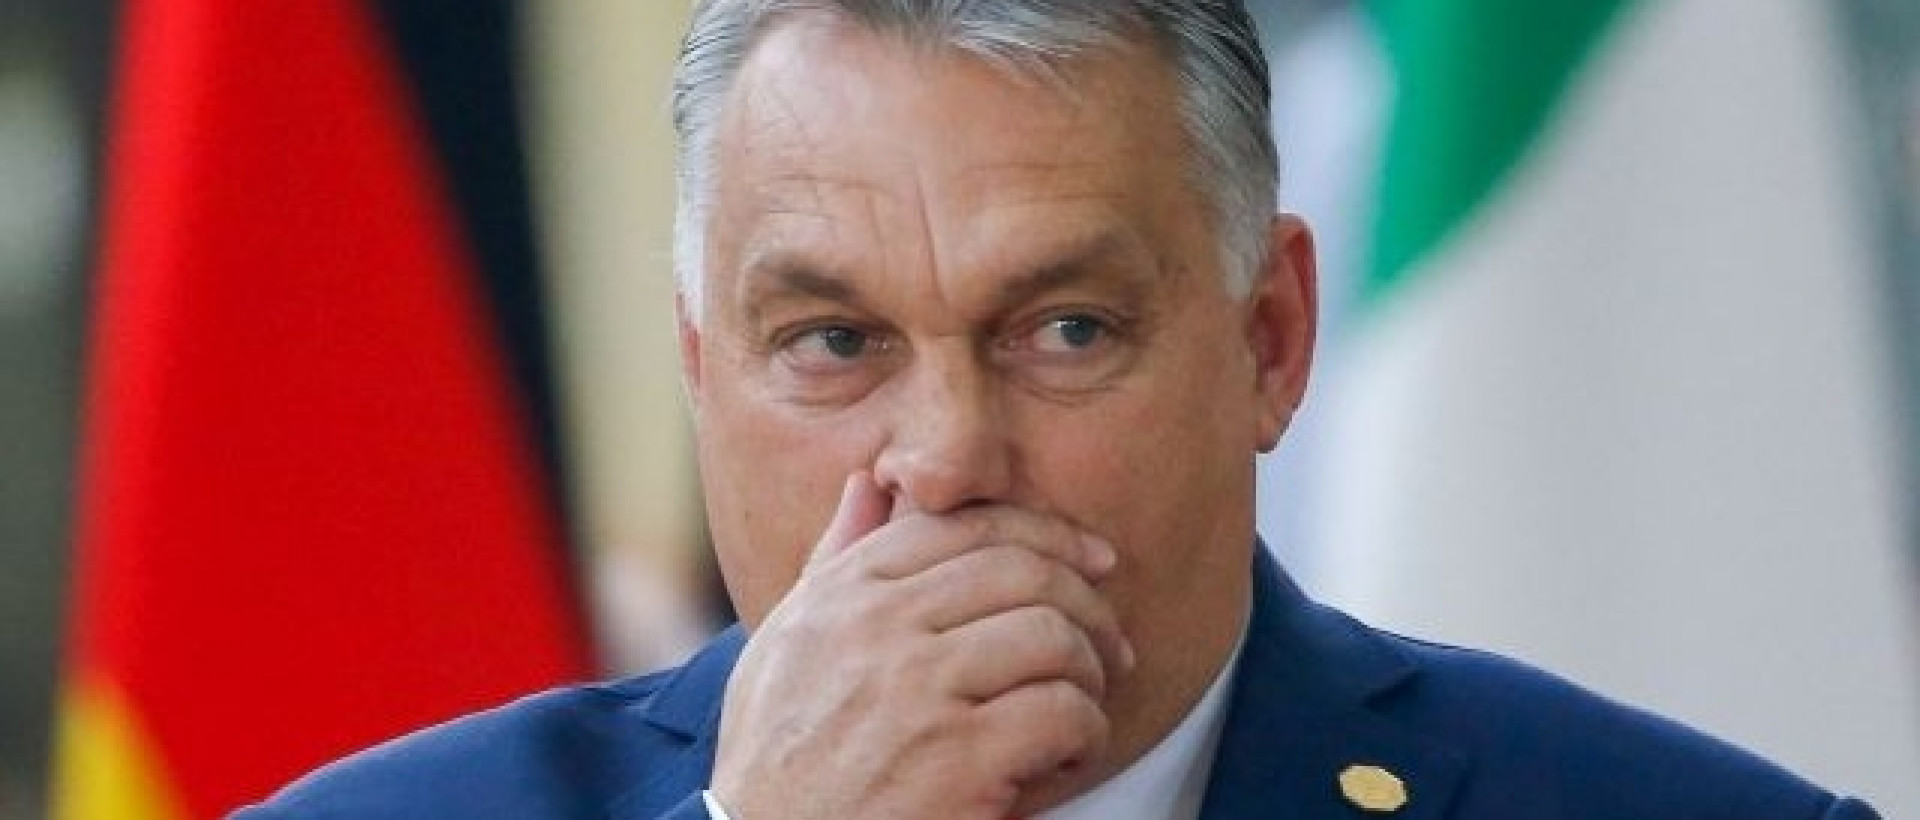 Orbán évértékelője: Mindenről beszélt, csak a lényegről nem